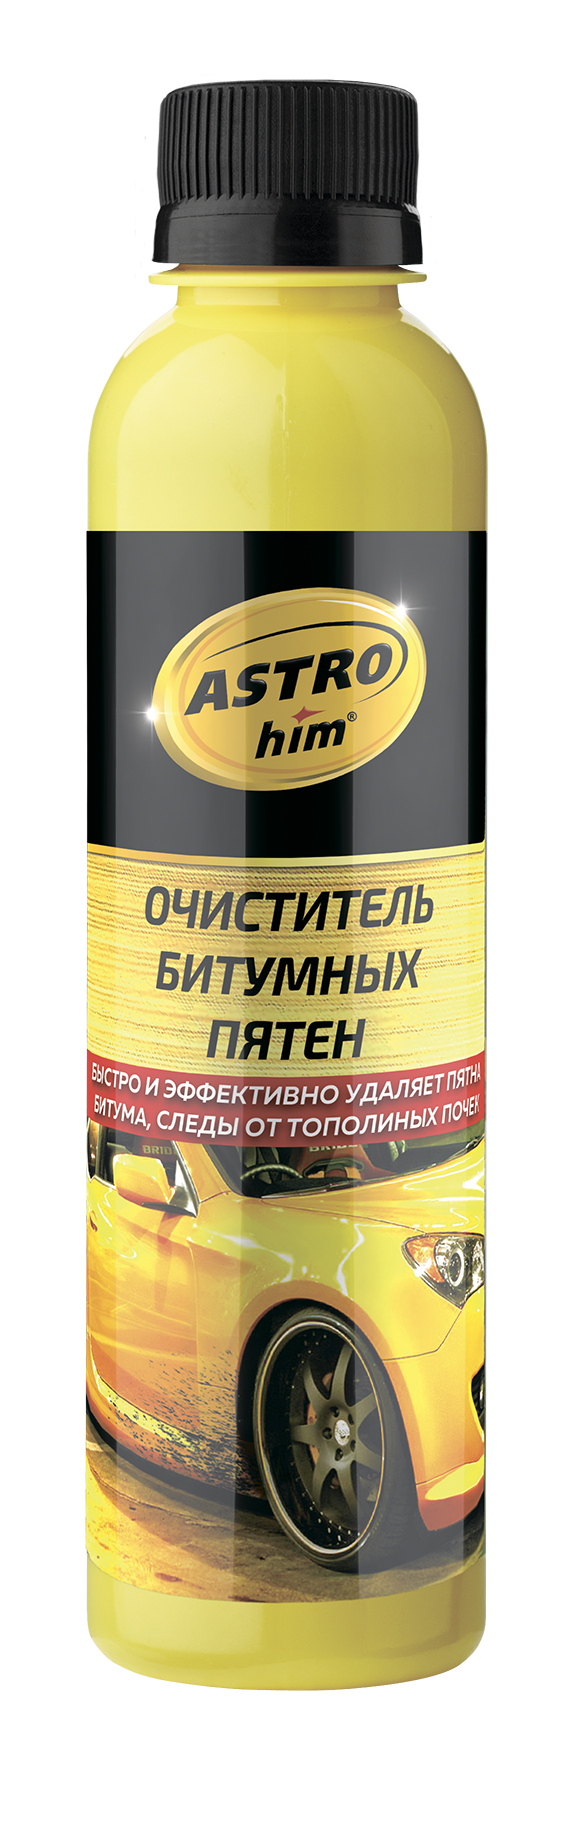 Очиститель битумных пятен AstroHim 240мл 